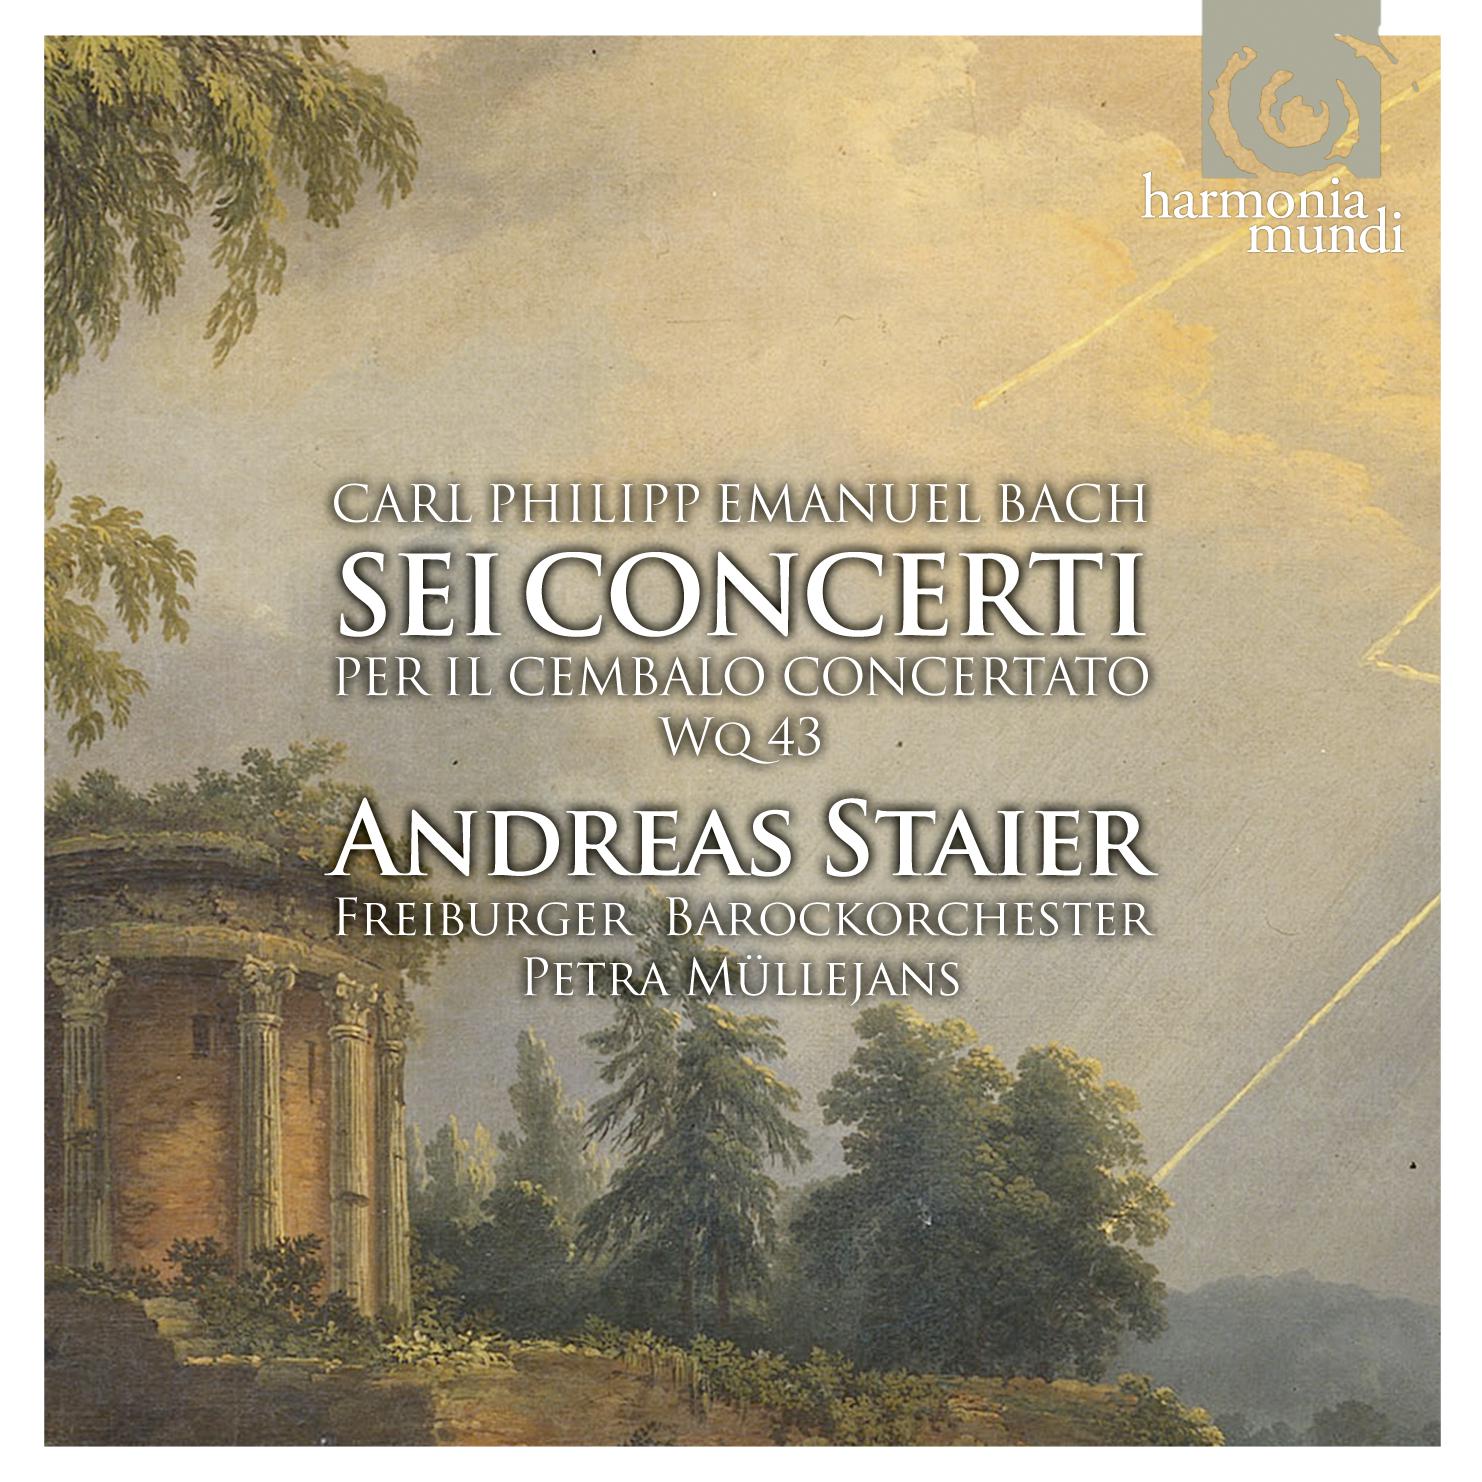 Concerto No. 4 in C Minor: I. Allegro assai